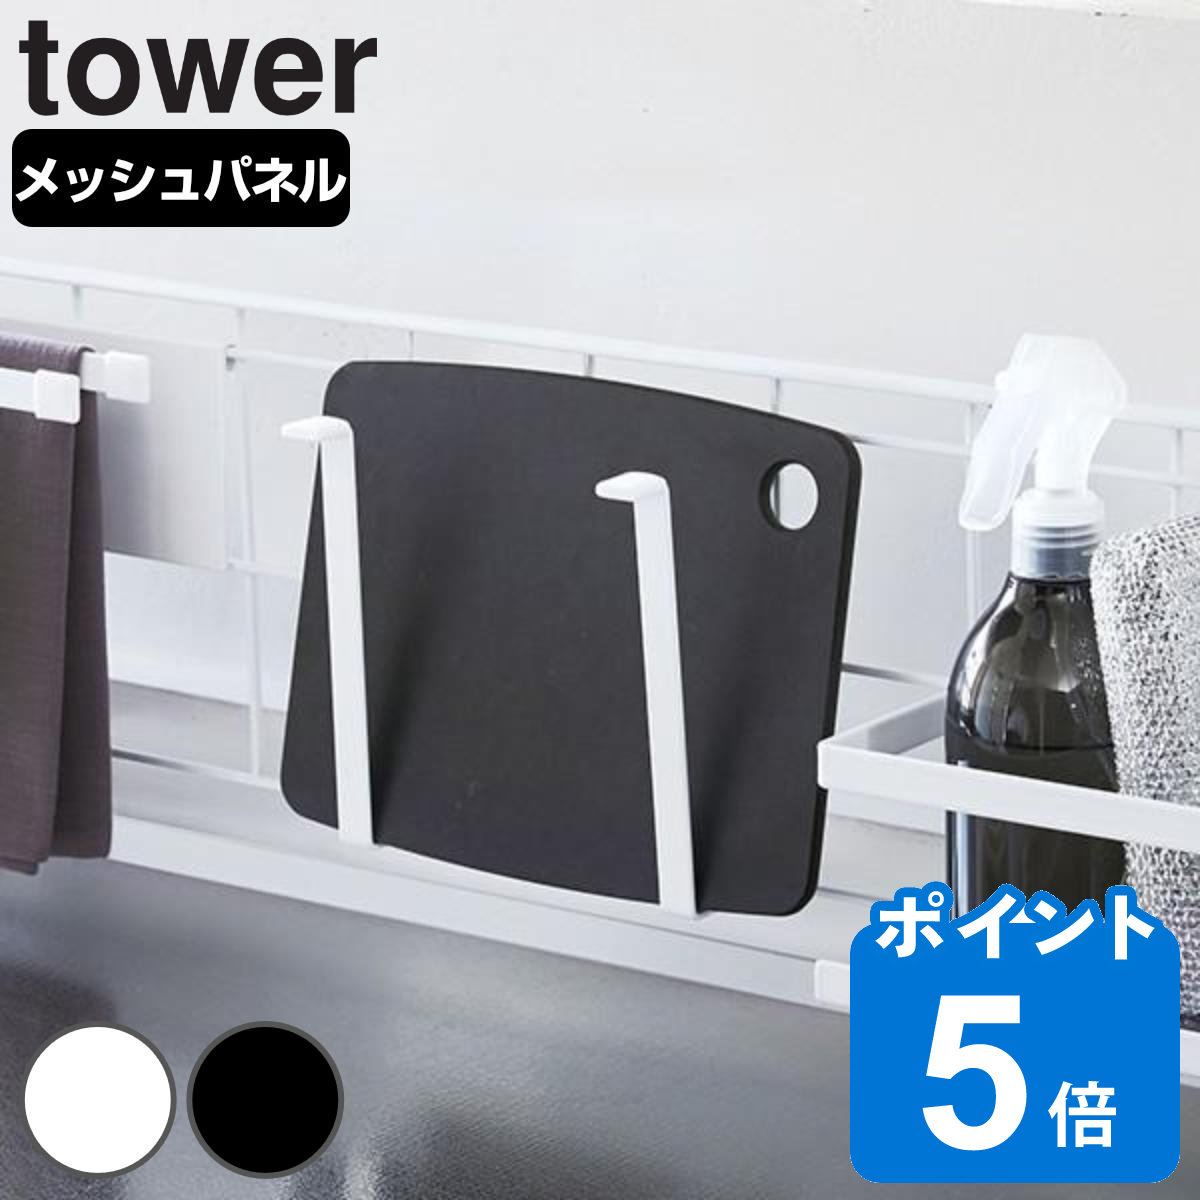 tower 自立式メッシュパネル用 まな板ハンガー タワー 対応パーツ